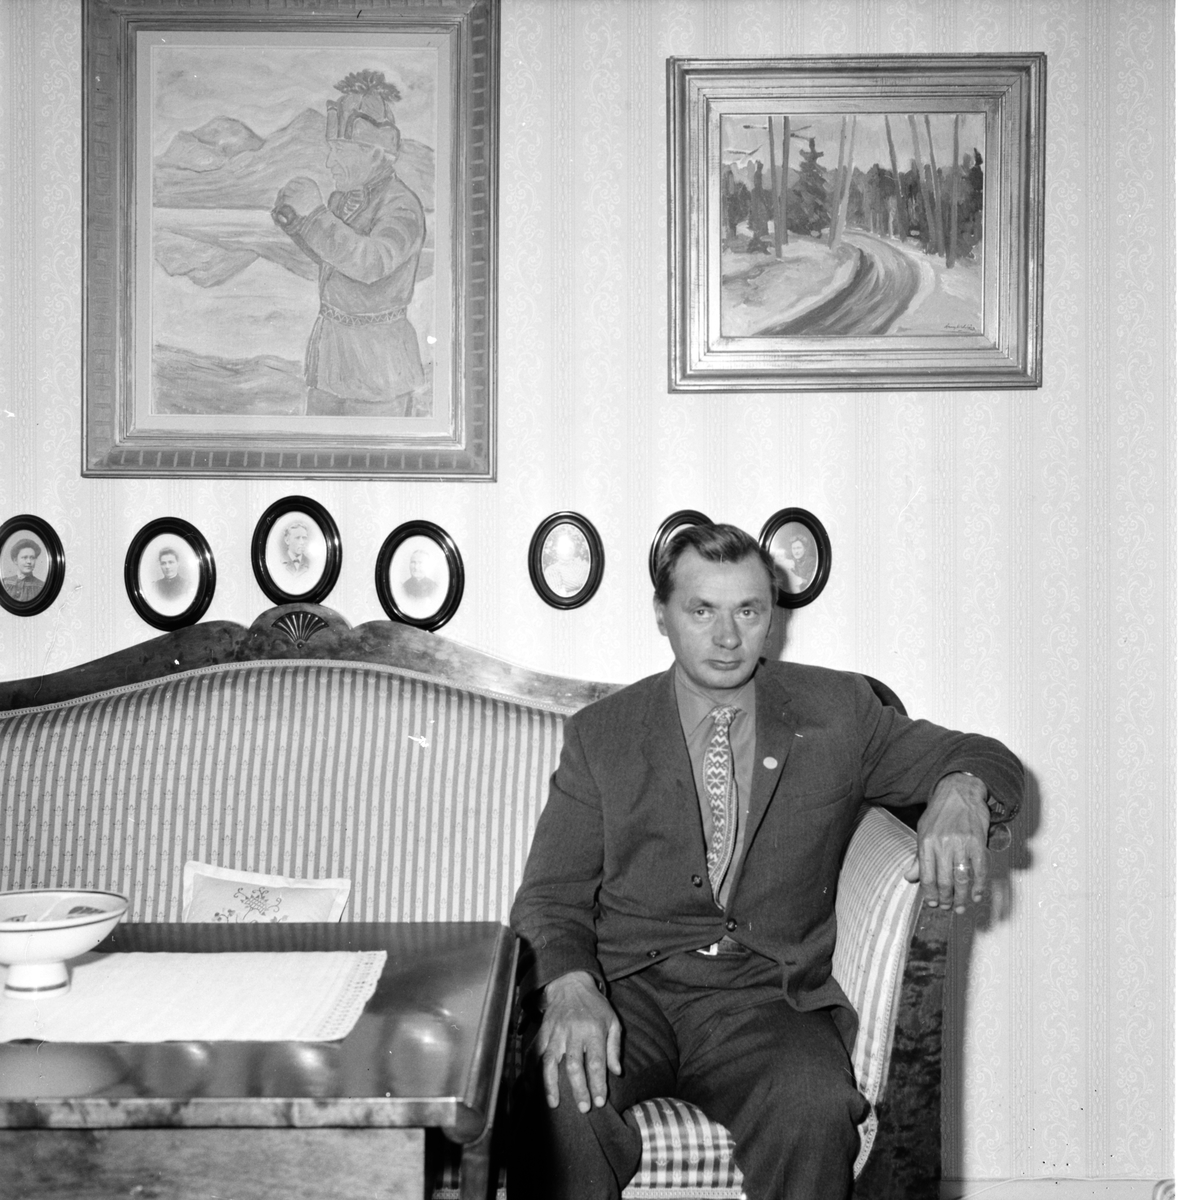 Renägare Olle Blind från Ljungdalen, fotograferad 28 April 1965 i journalist PW Hägers hem, Säversta Bollnäs.